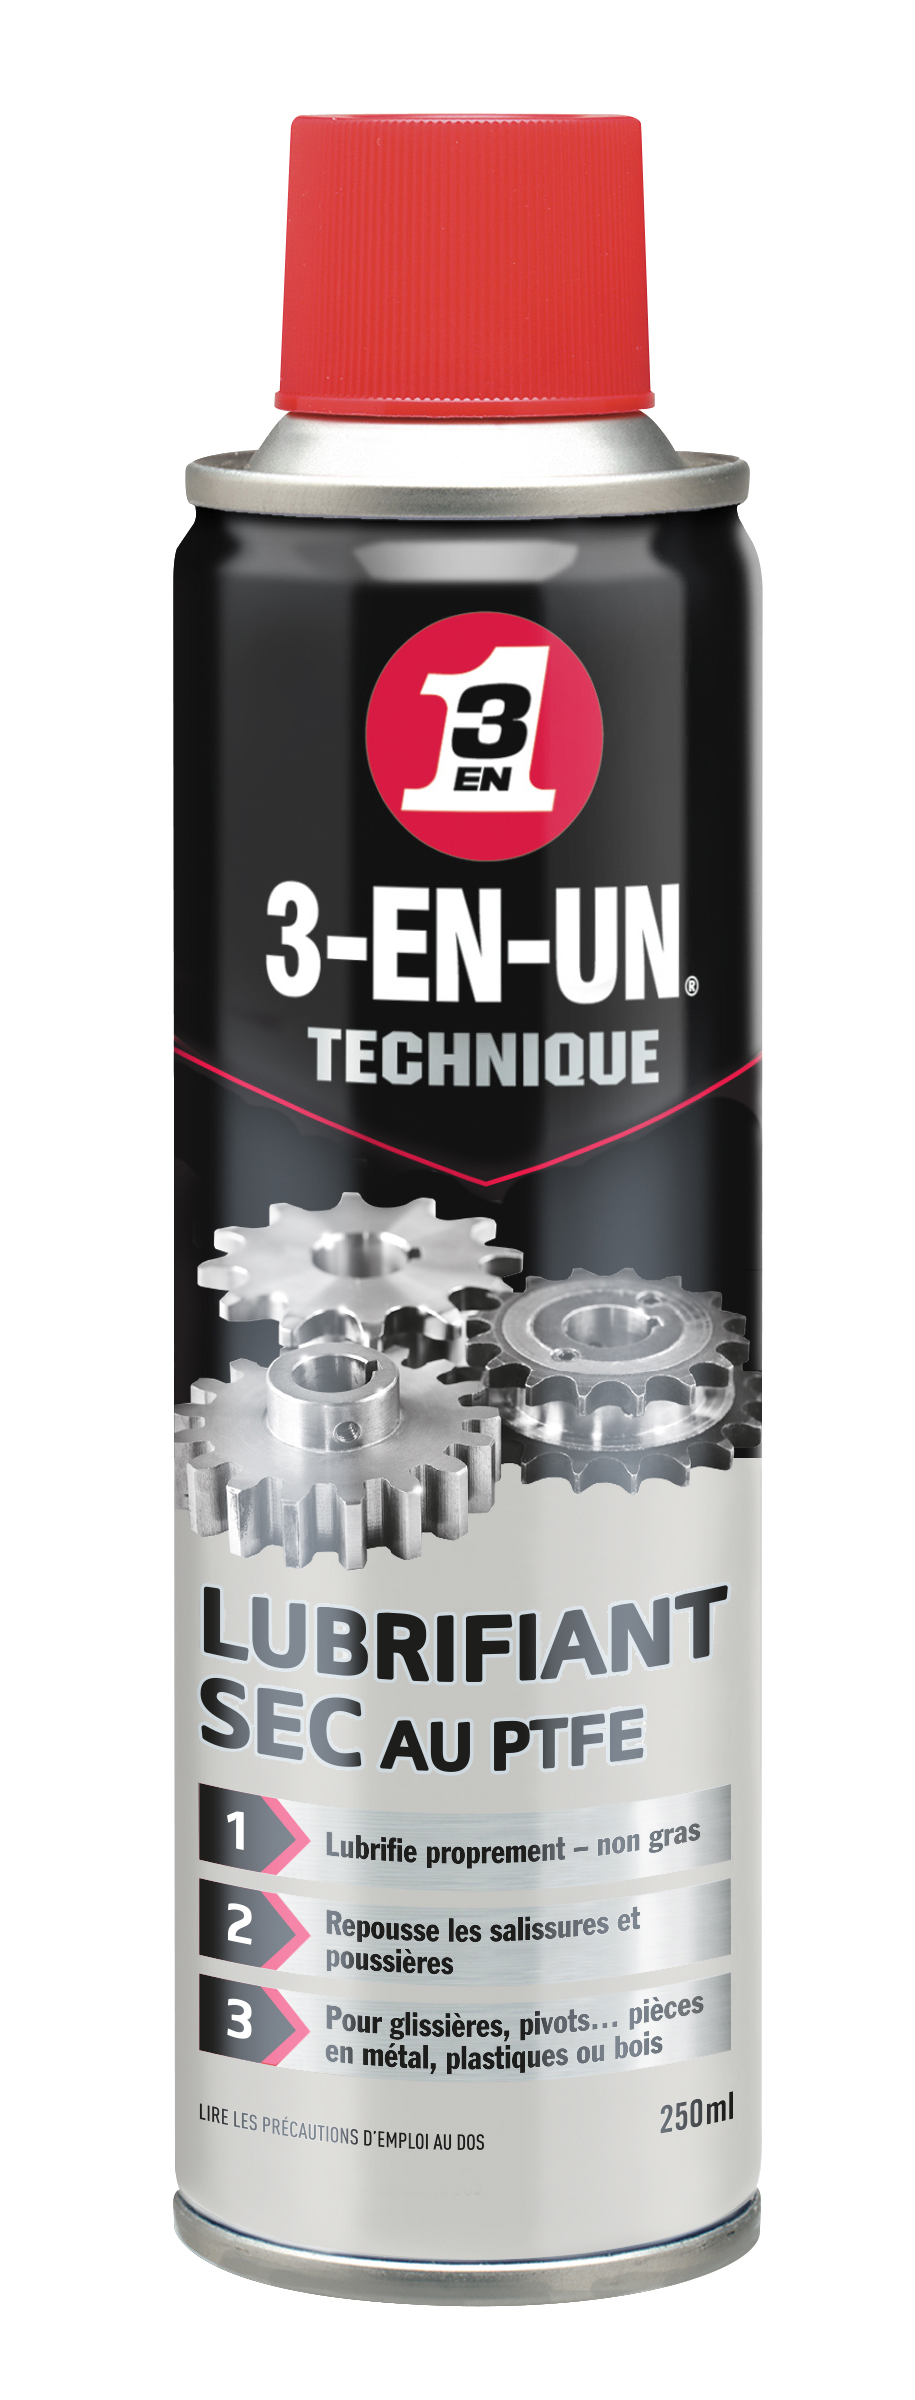 Technique lubrifiant sec au ptfe 250ml - 3-EN-UN